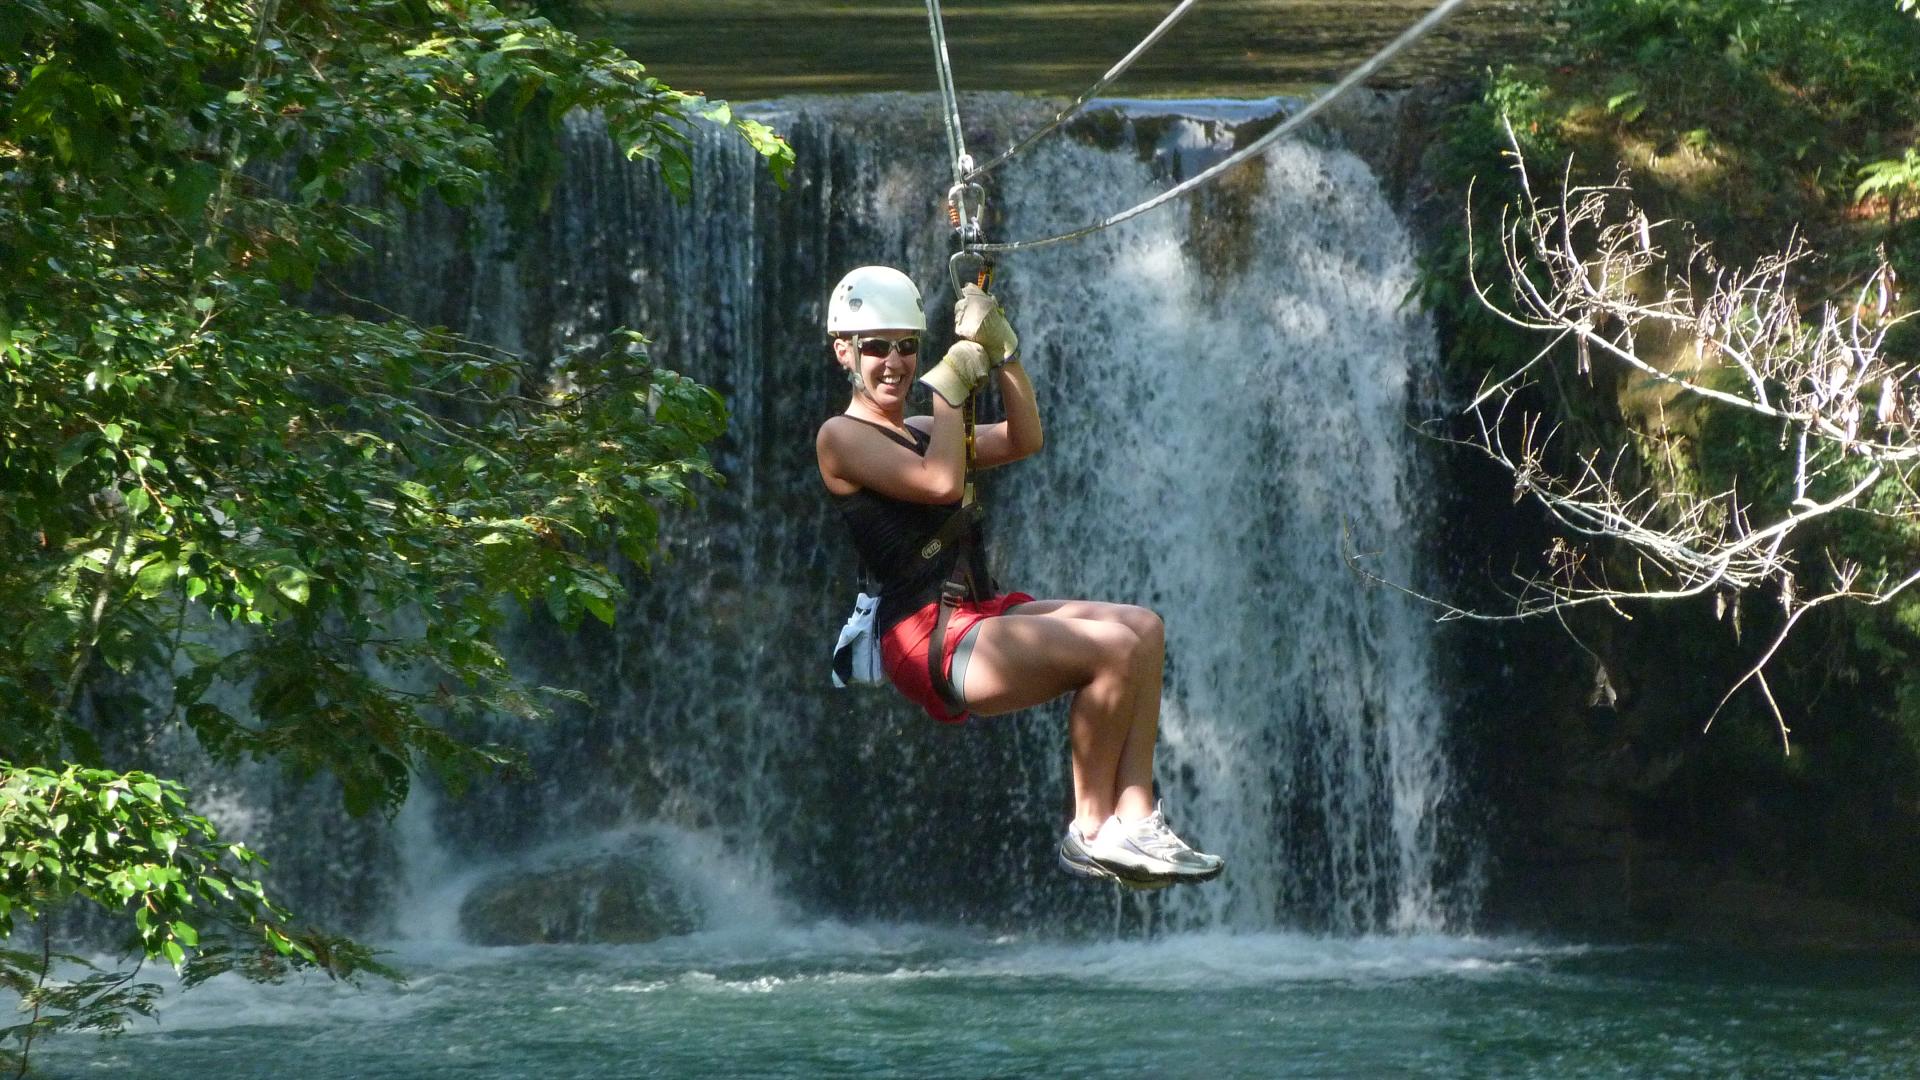 Enjoy Zipline Adventure at YS Waterfalls